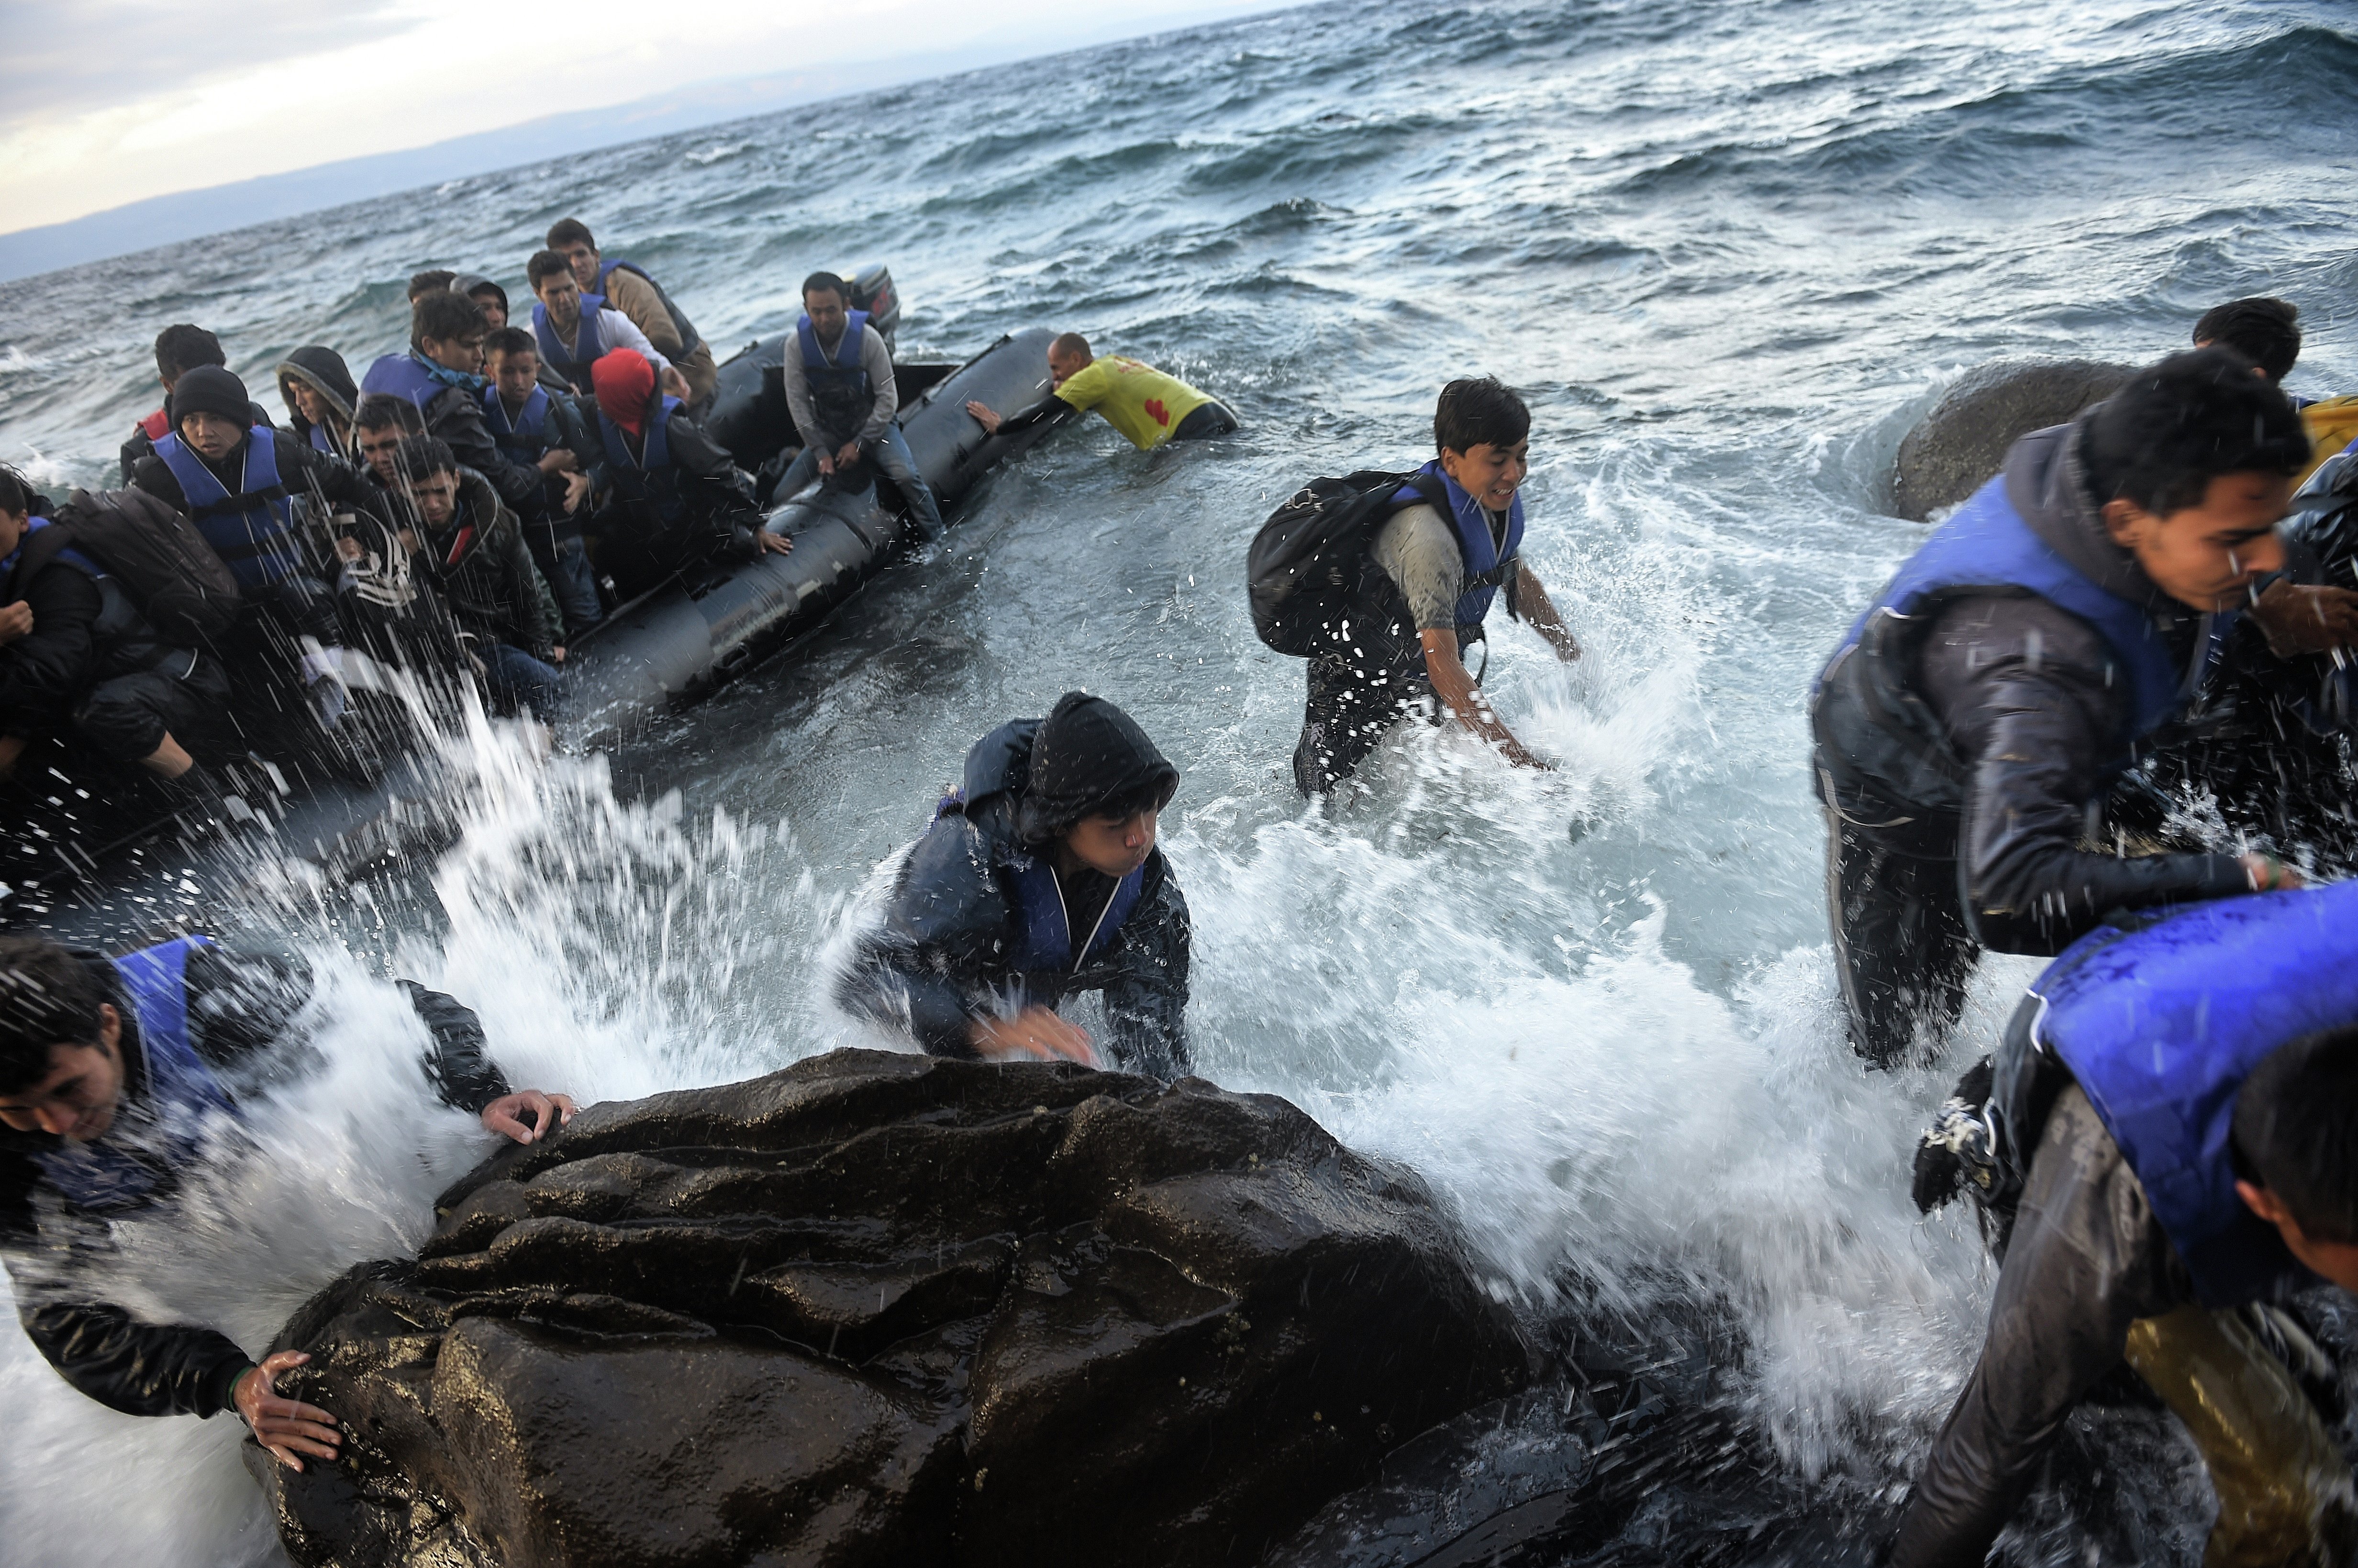 ЕС и беженцы: ничего не решено